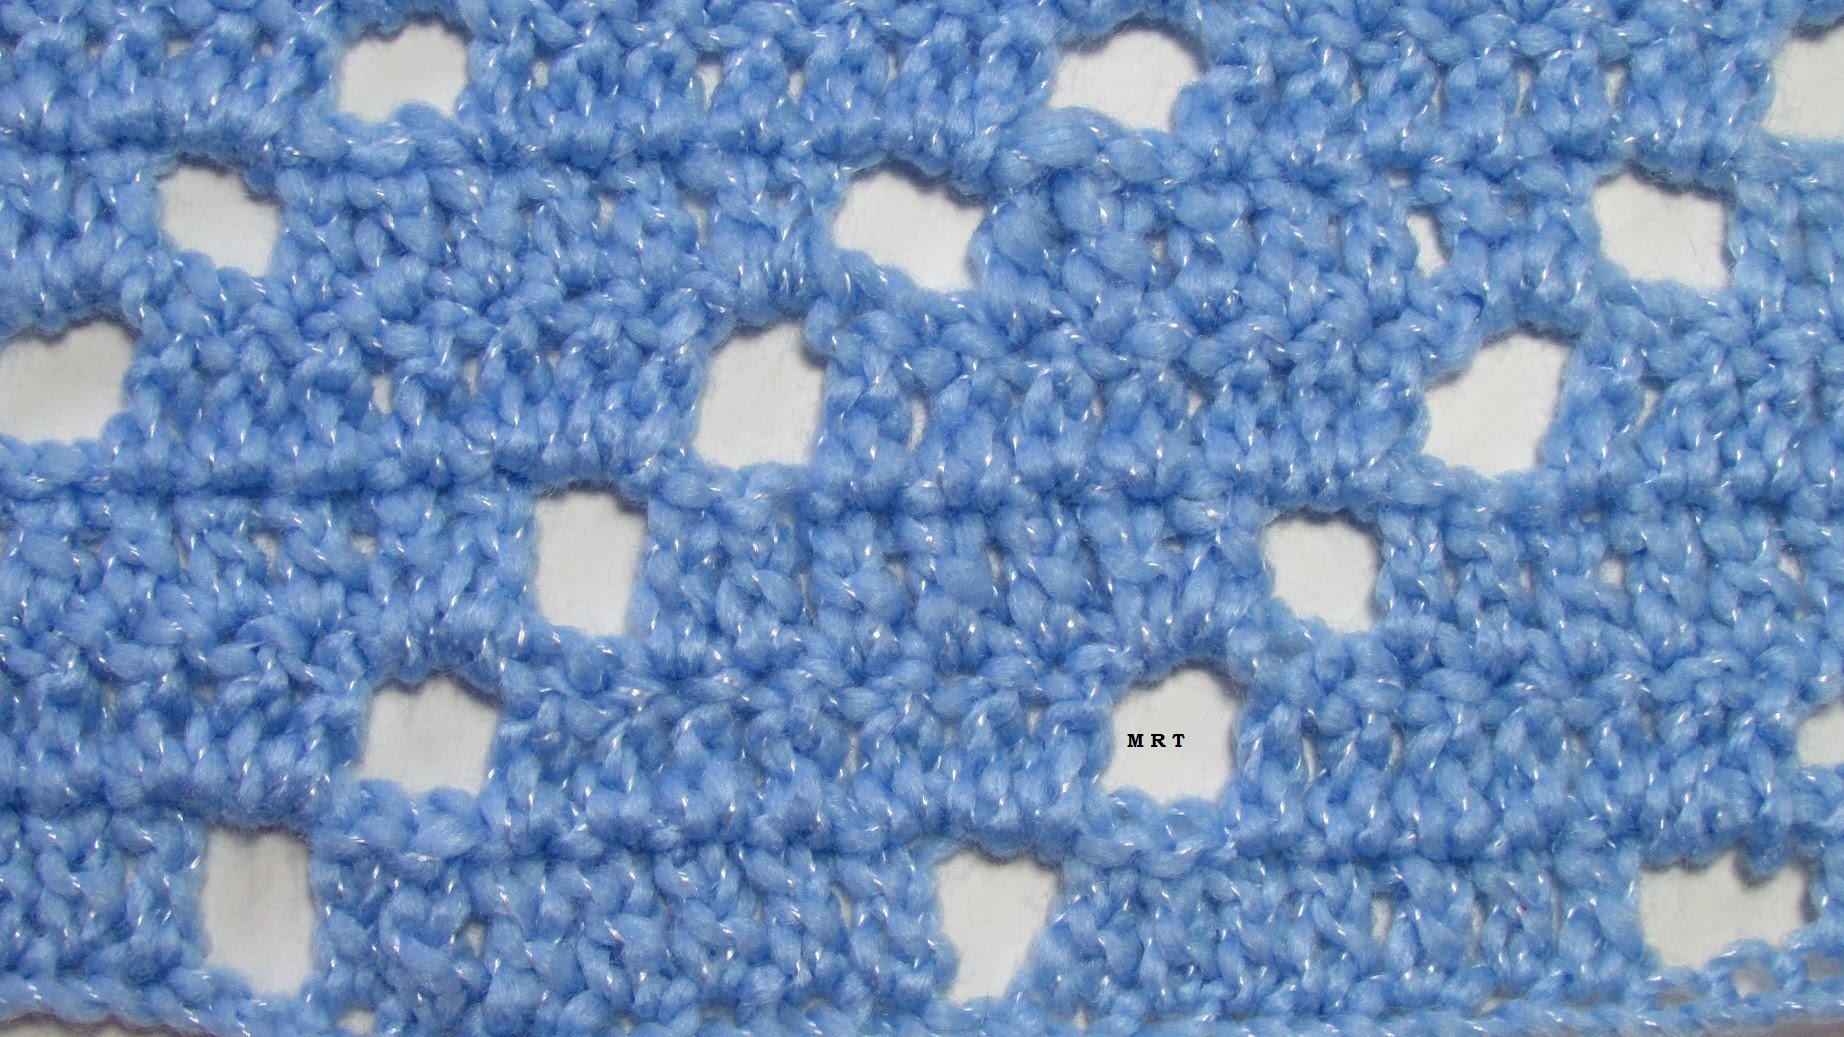 Crochet: Cómo tejer punto filet #1 paso a paso fácil!